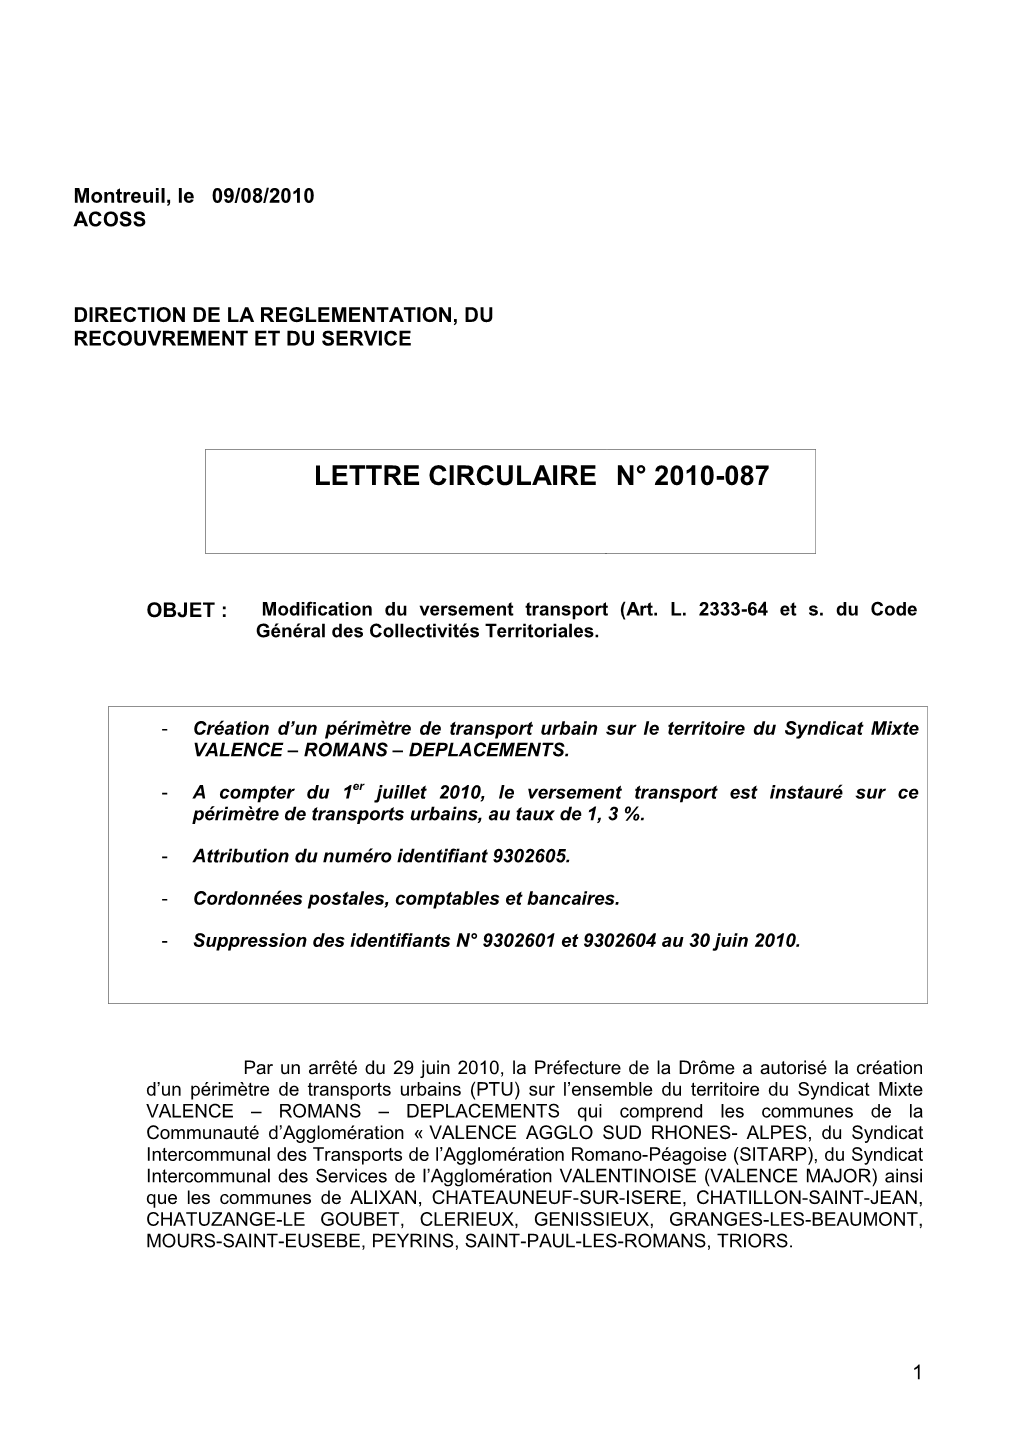 Modification Du Versement Transport (Art. L. 2333-64 Et S. Du Code Général Des Collectivités Territoriales